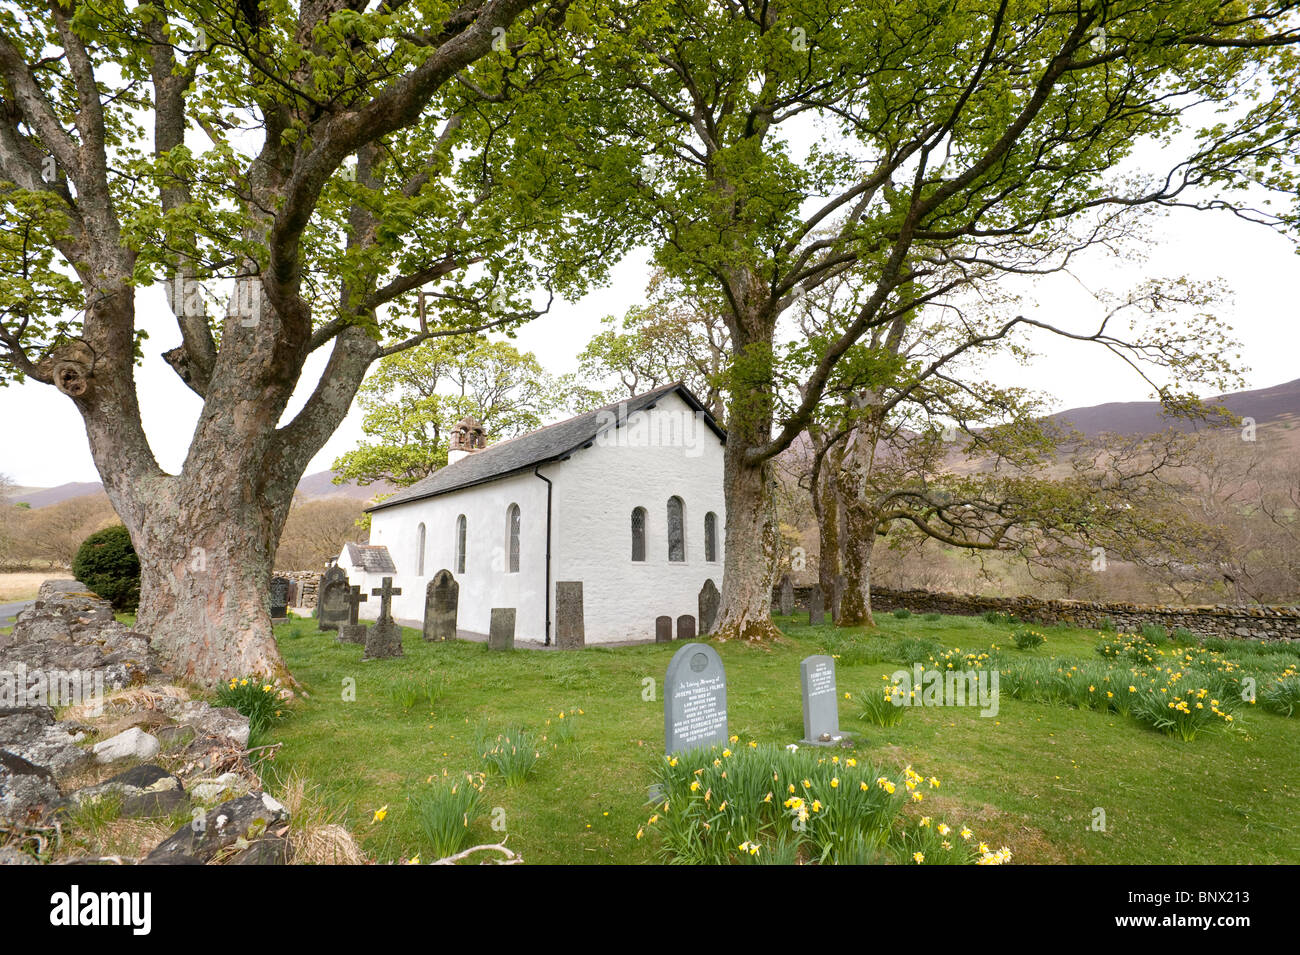 La chiesa a Newlands, Cumbria. Ispirato poema "maggio" dal poeta lakeland Wordsworth illustrata anche da Beatrix Potter Foto Stock